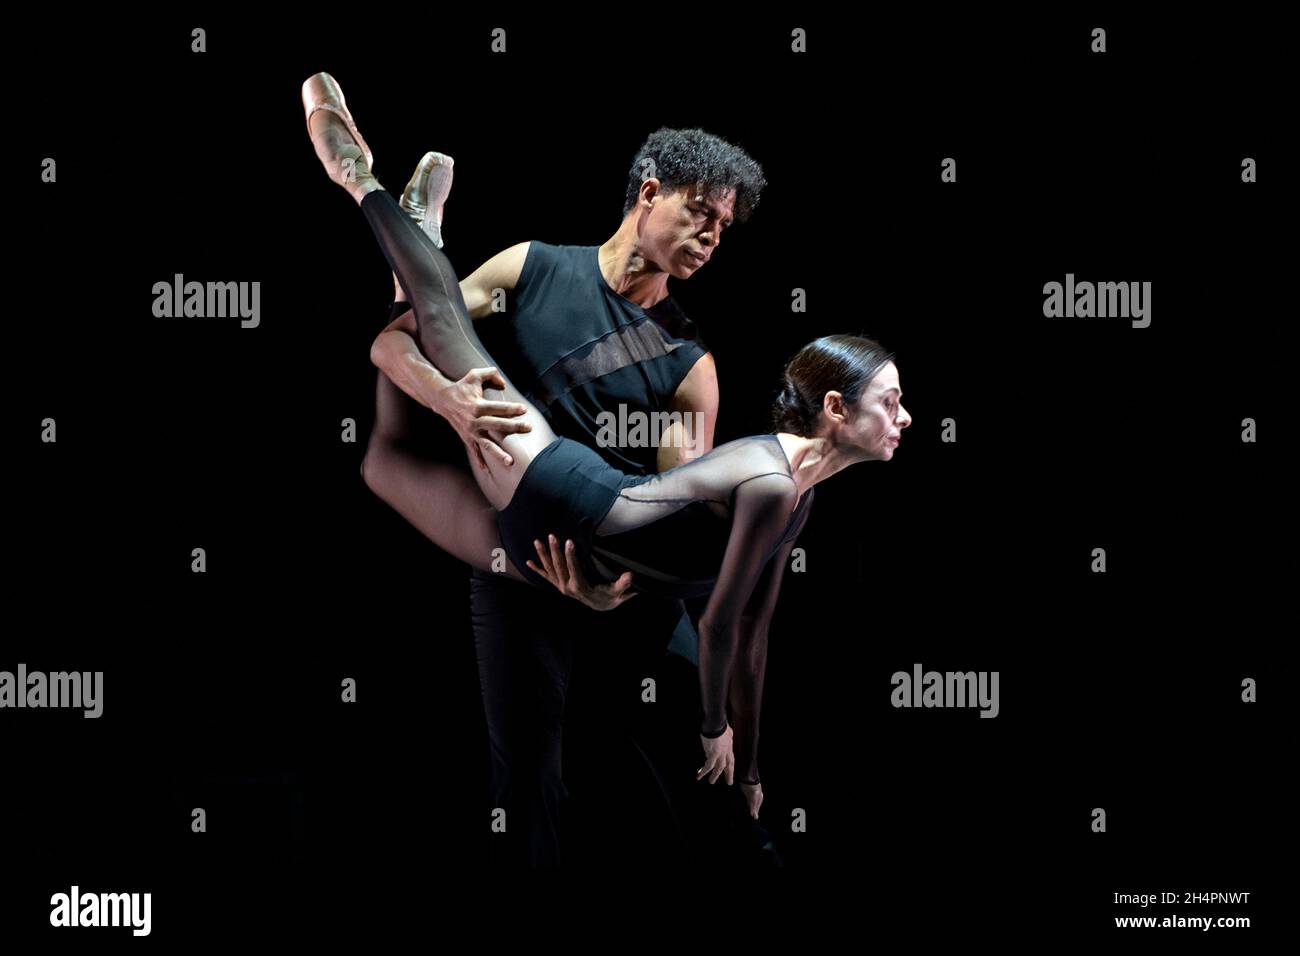 Alessandra Ferri et Carlos Acosta exécutent la première mondiale d'un nouveau duo / pas de deux de Goyo Montero dans le cadre du Birmingham Royal Ballet's Cuated Banque D'Images